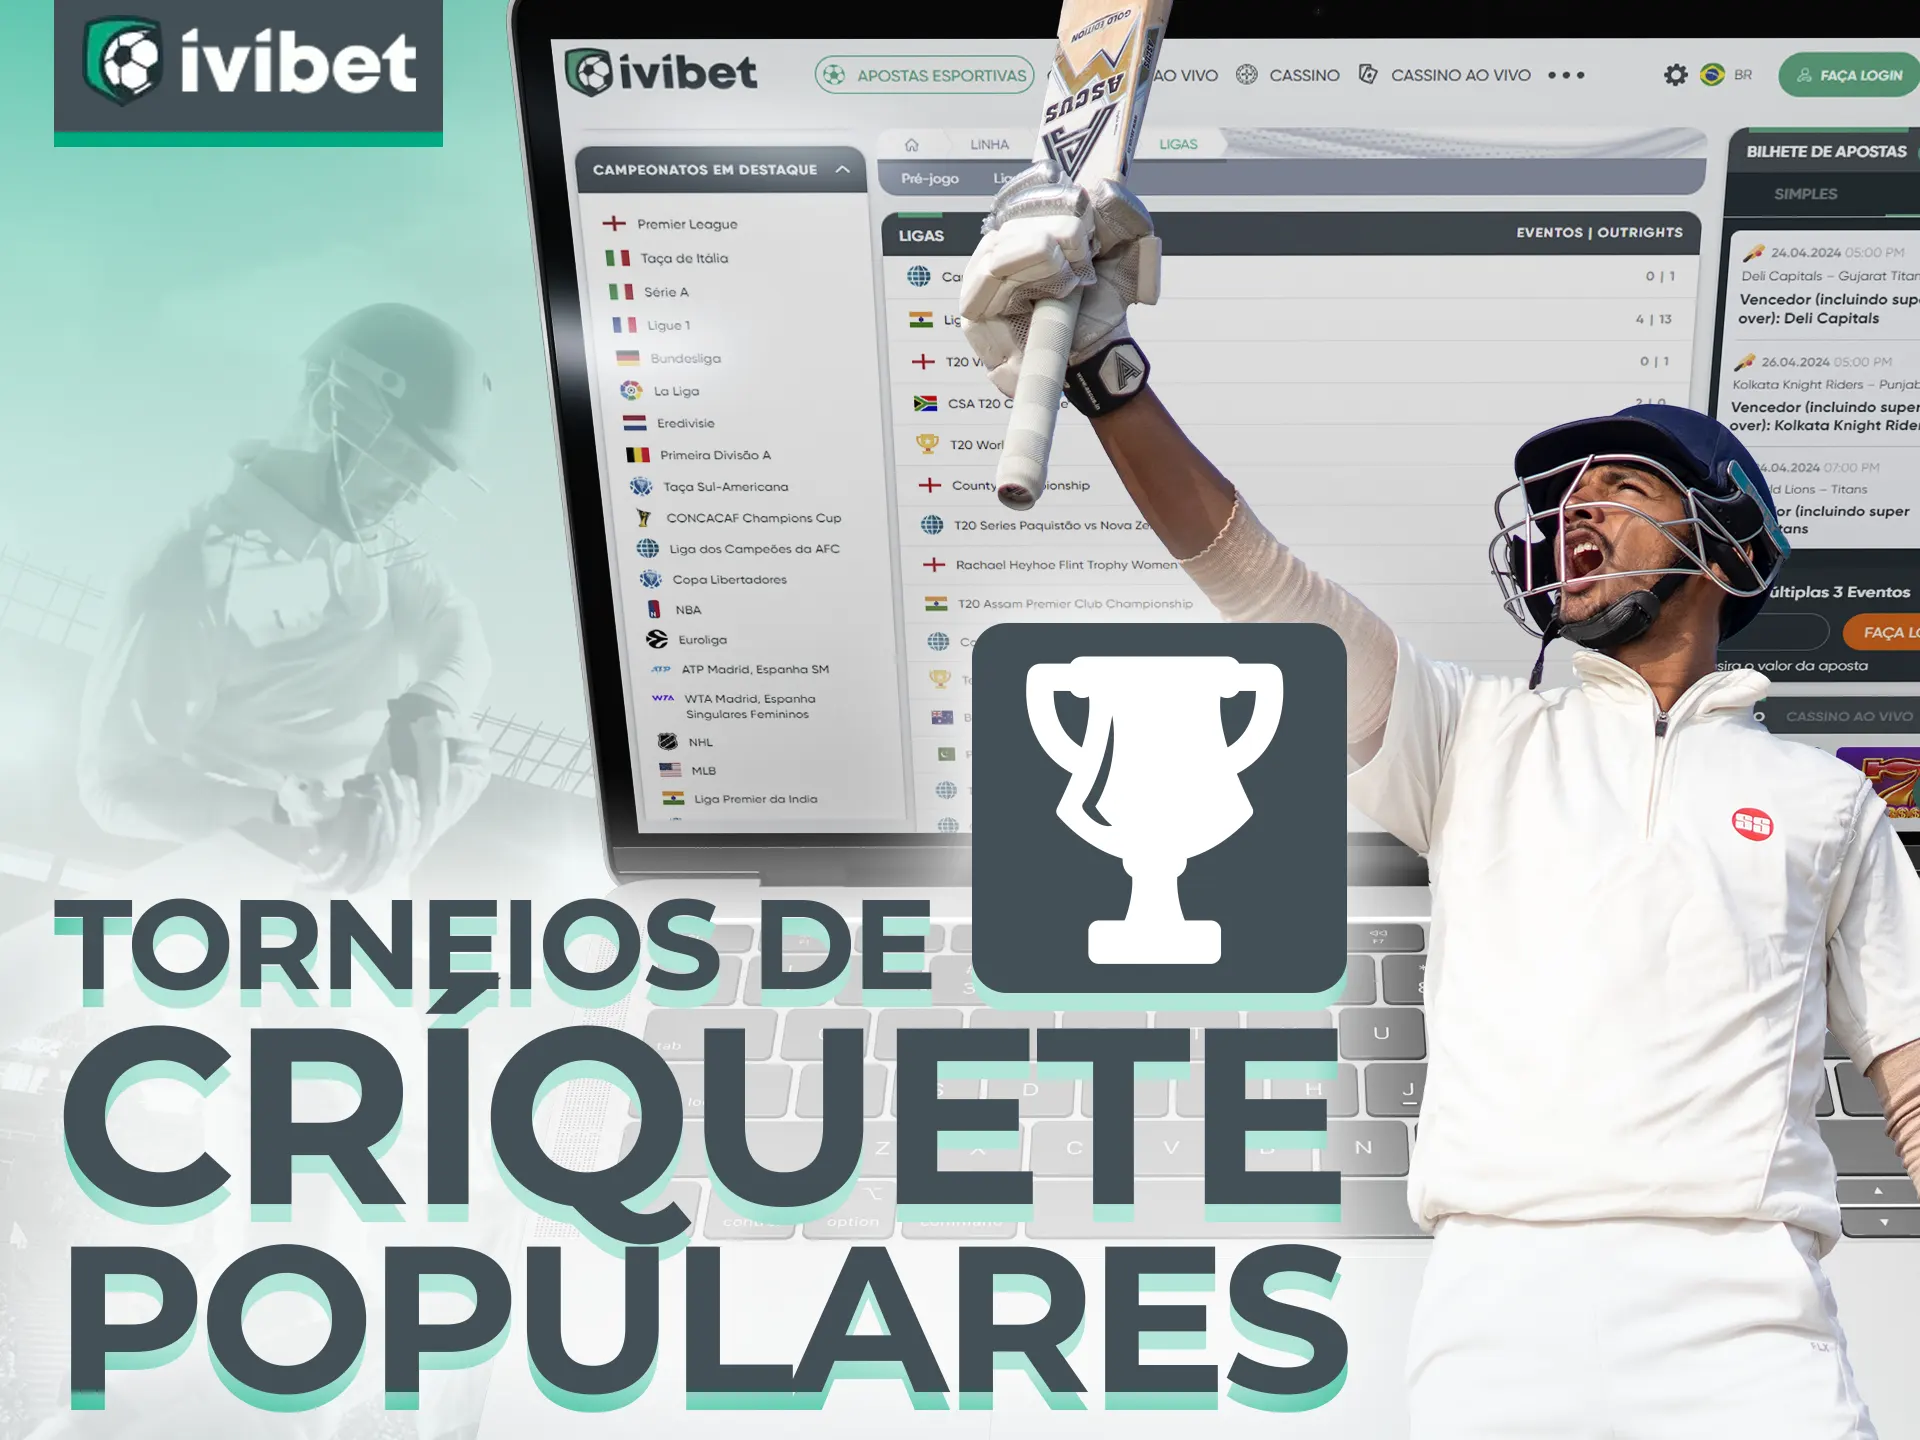 Ivibet oferece apostas nos torneios de críquete mais populares.